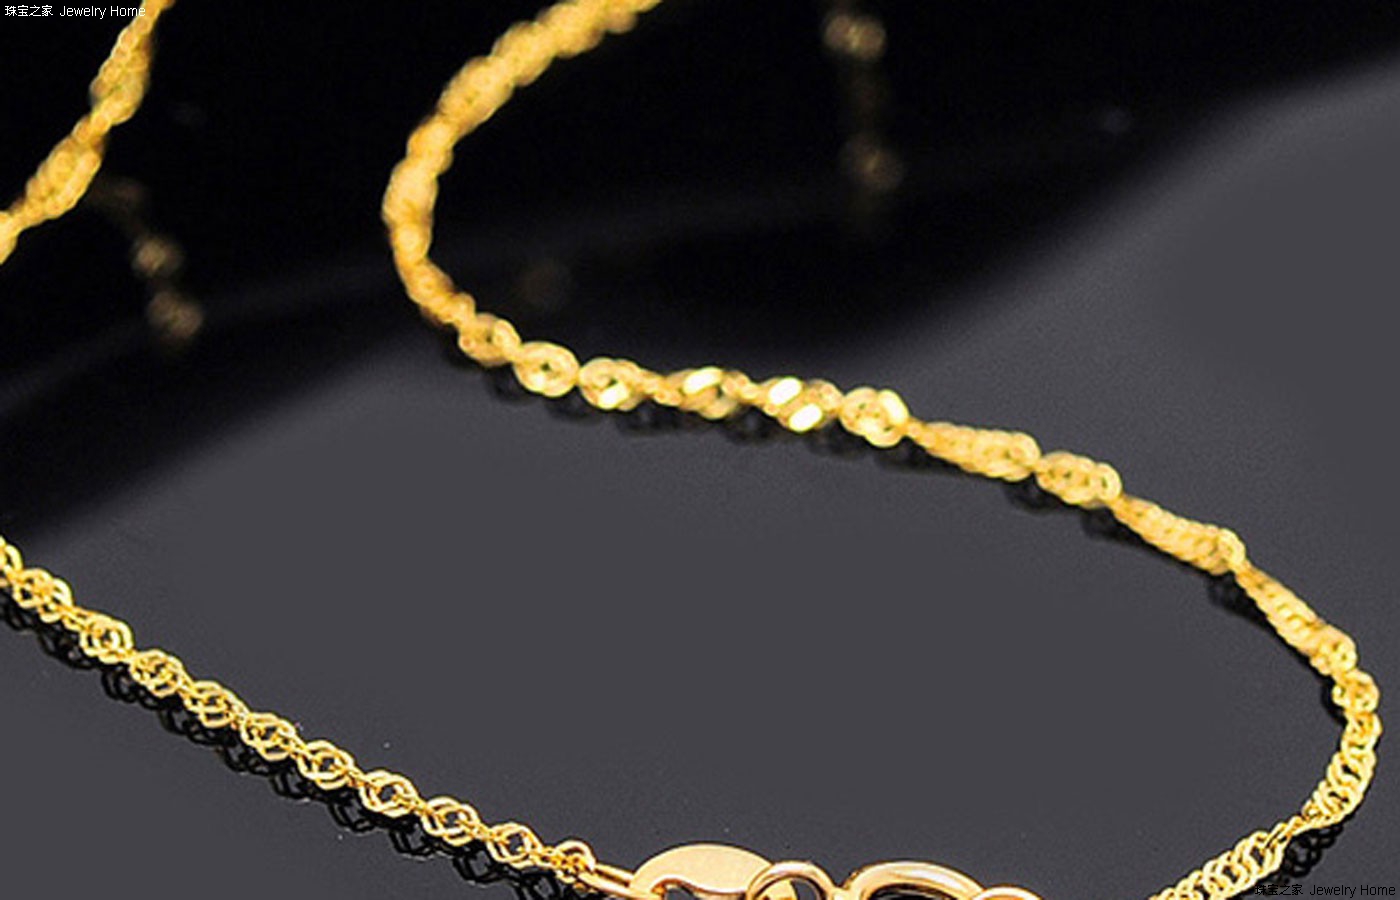 周大福男士黄金项链款式 凸显您的独特时尚魅力|腕表之家-珠宝